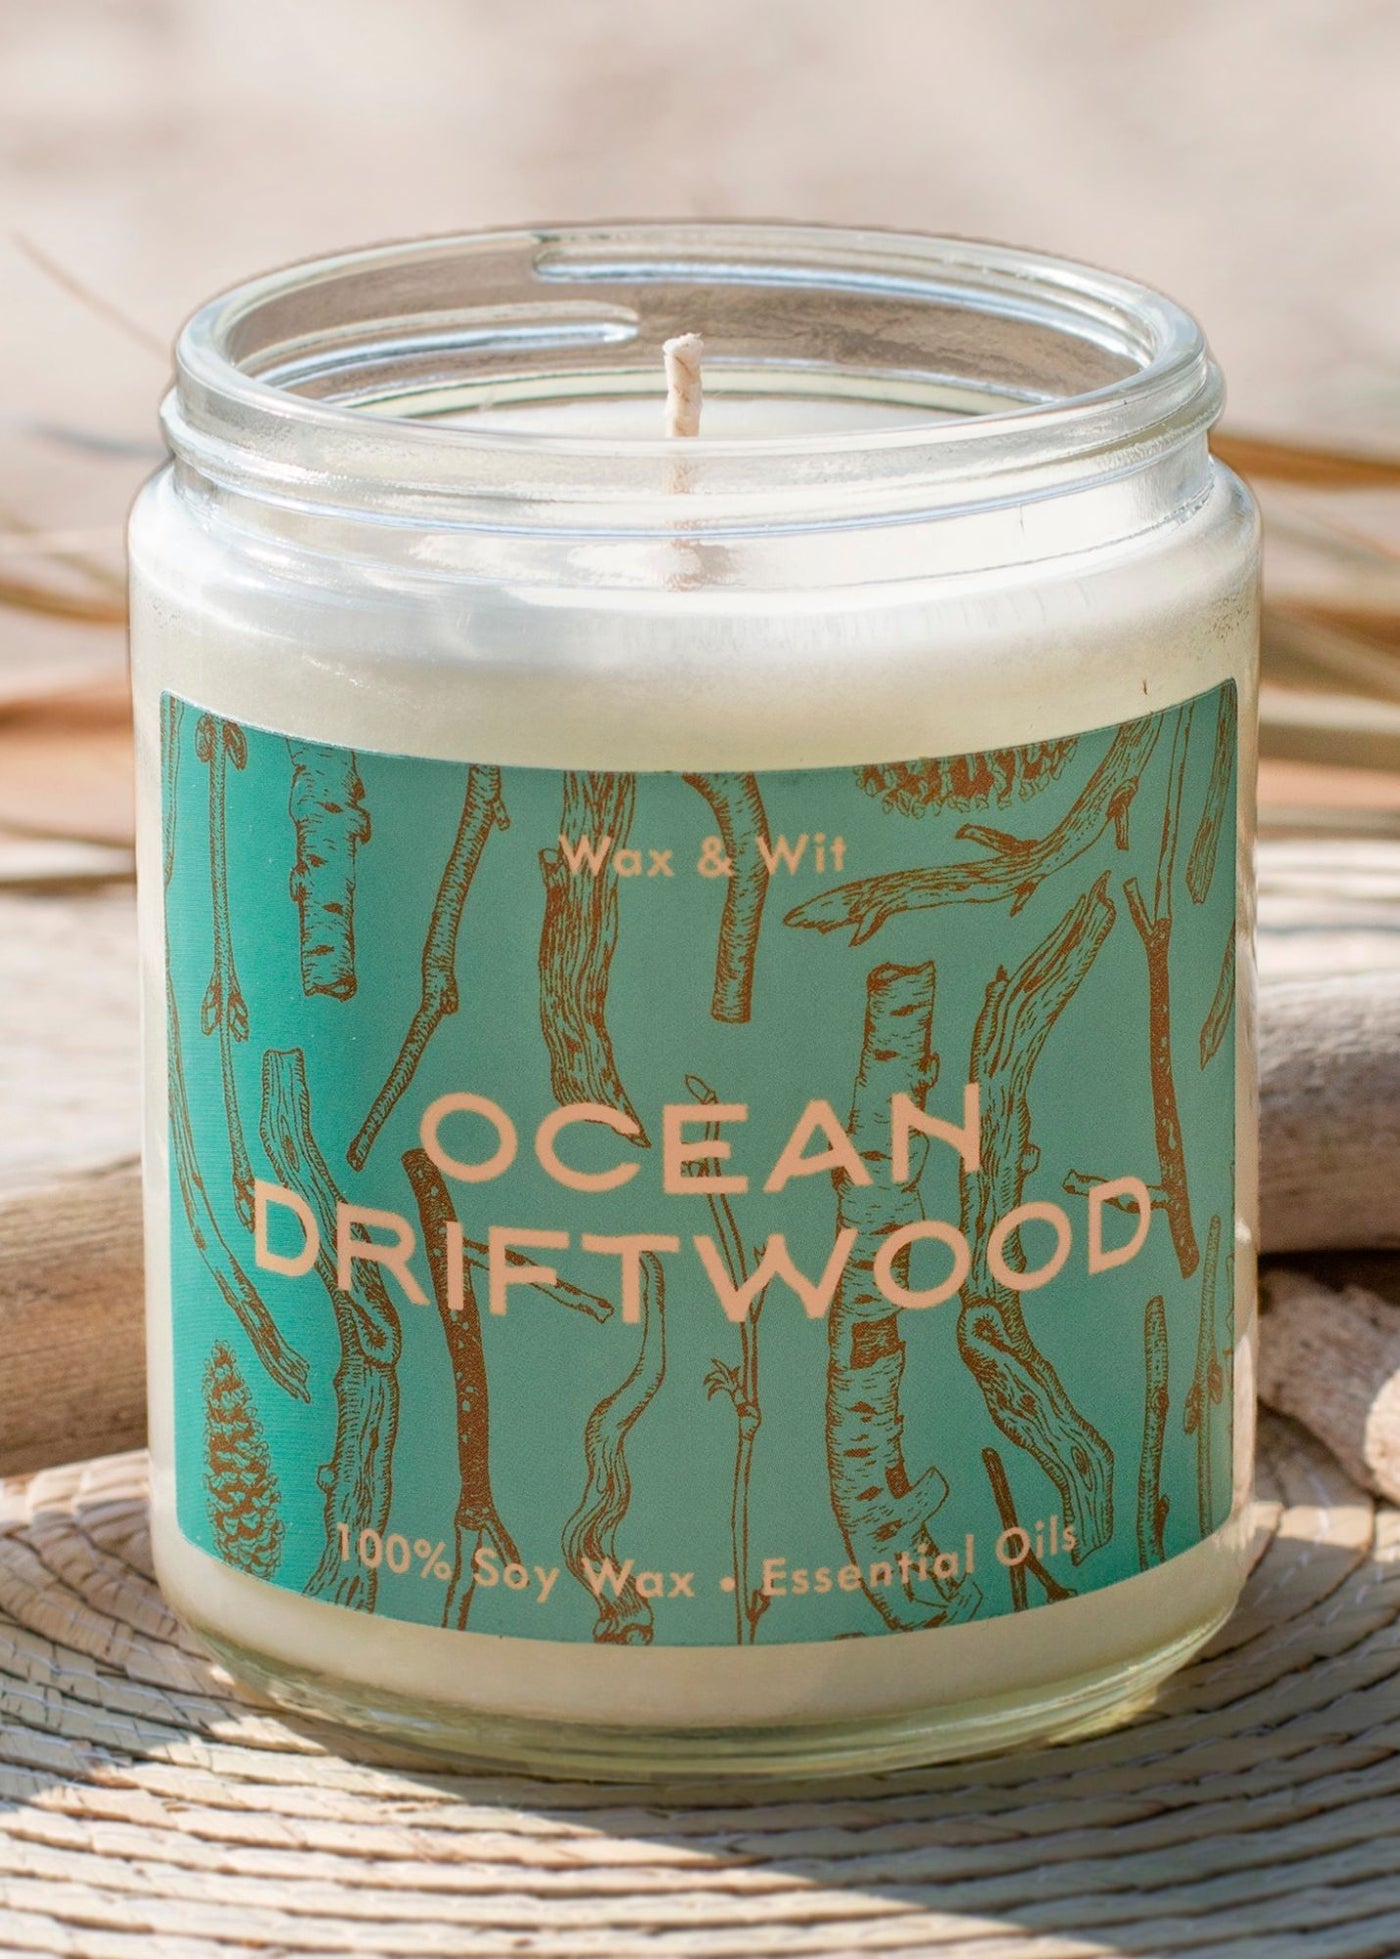 Ocean Driftwood